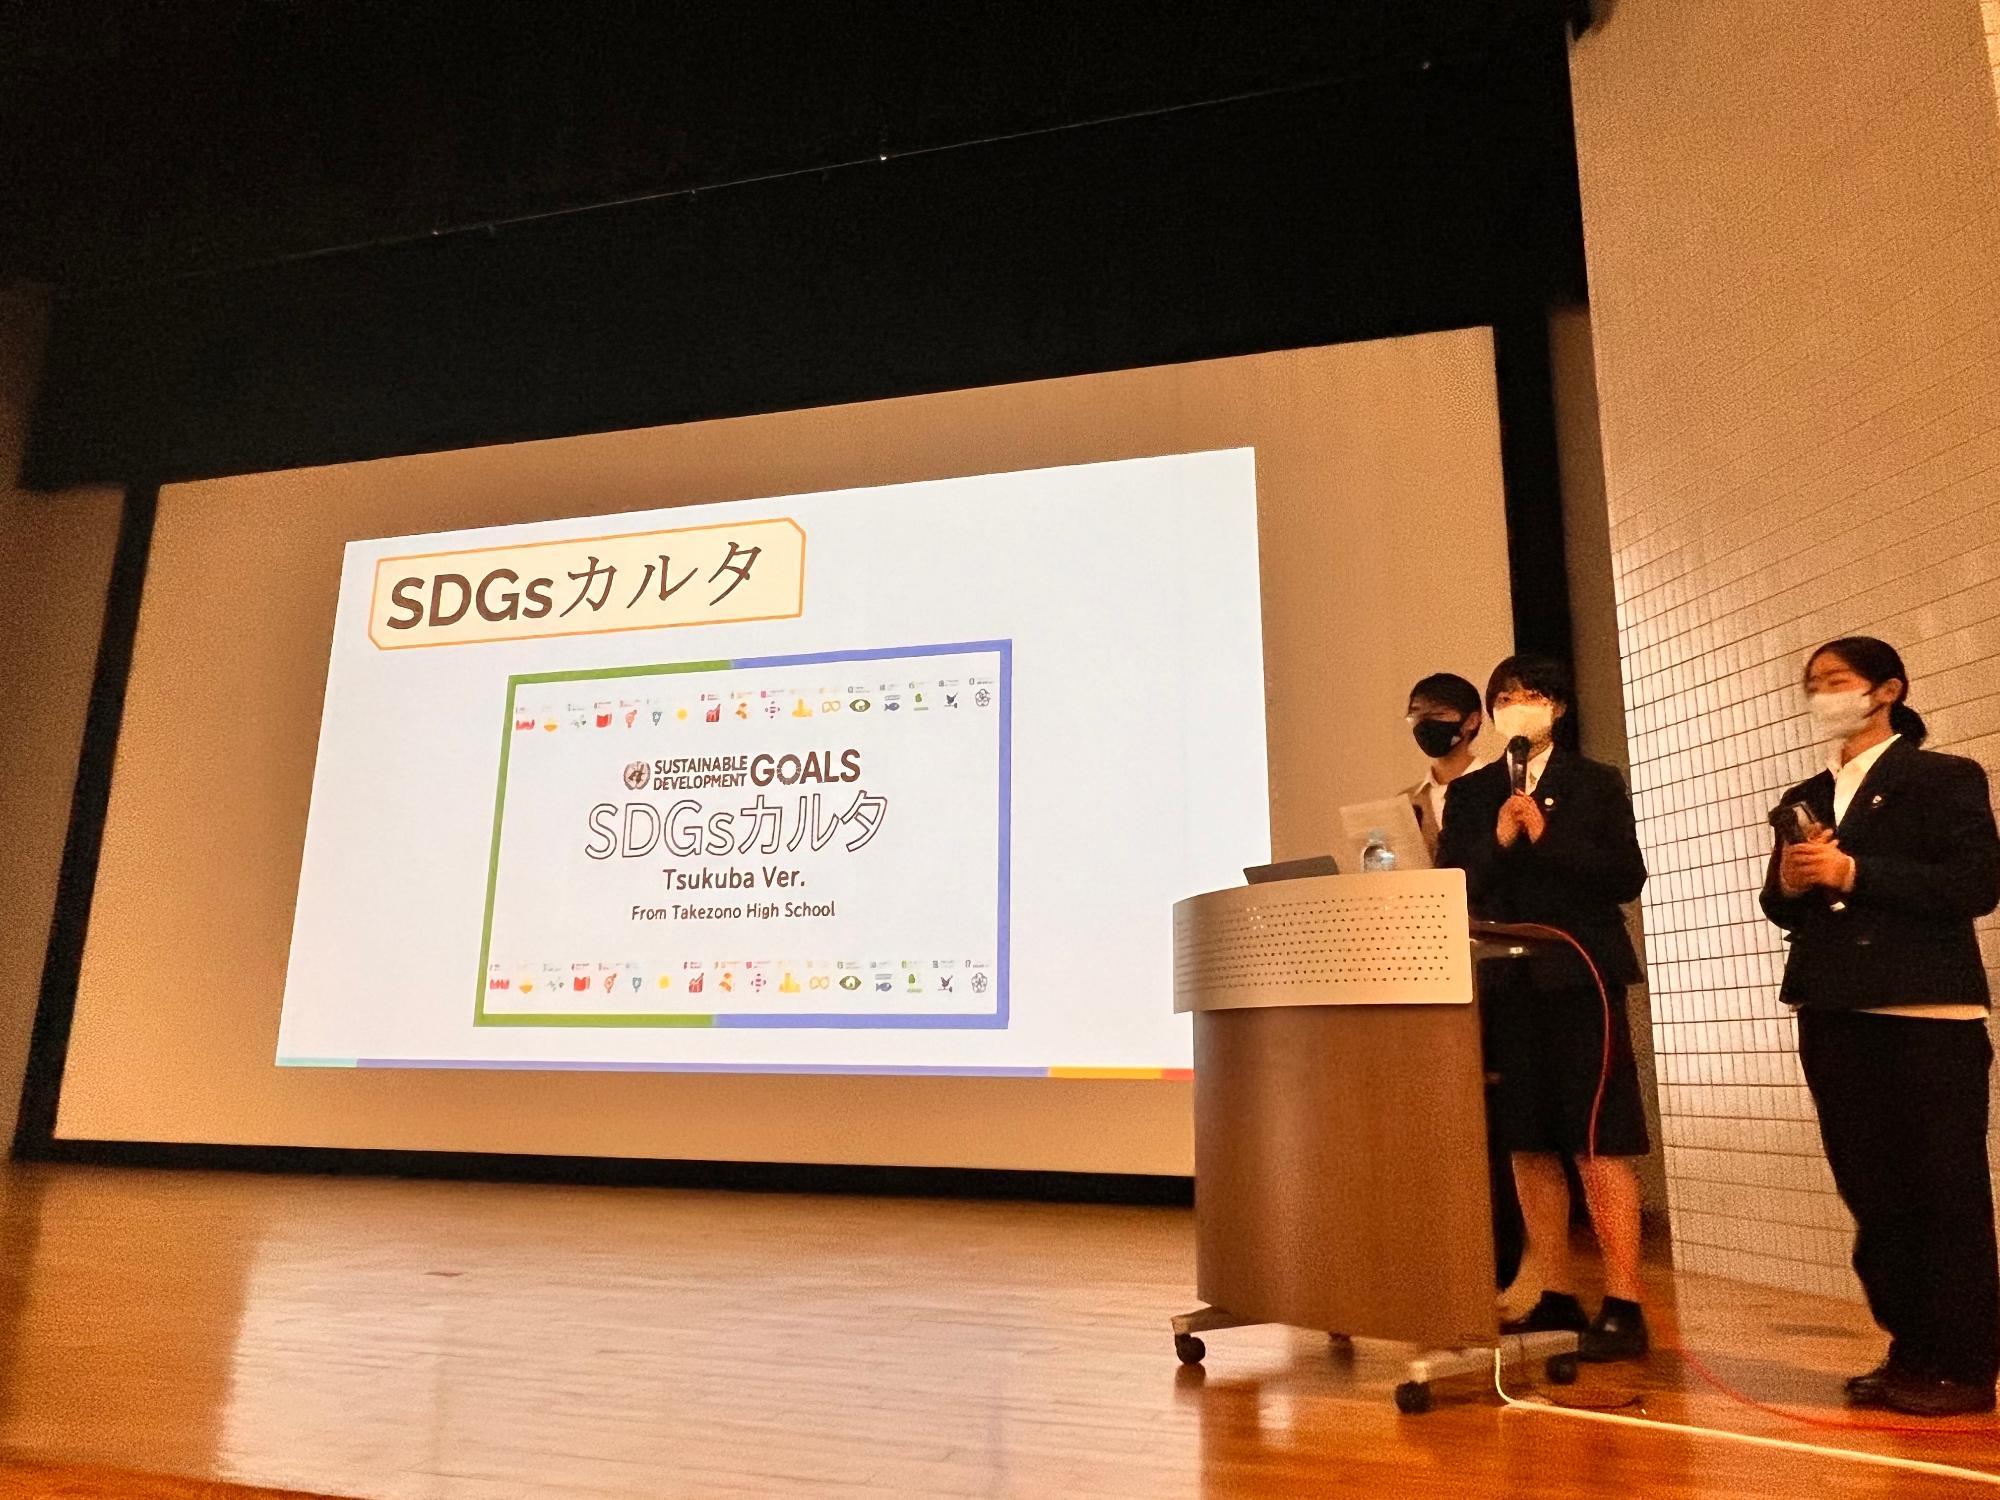 竹園高校SDGsサークルによる発表の様子